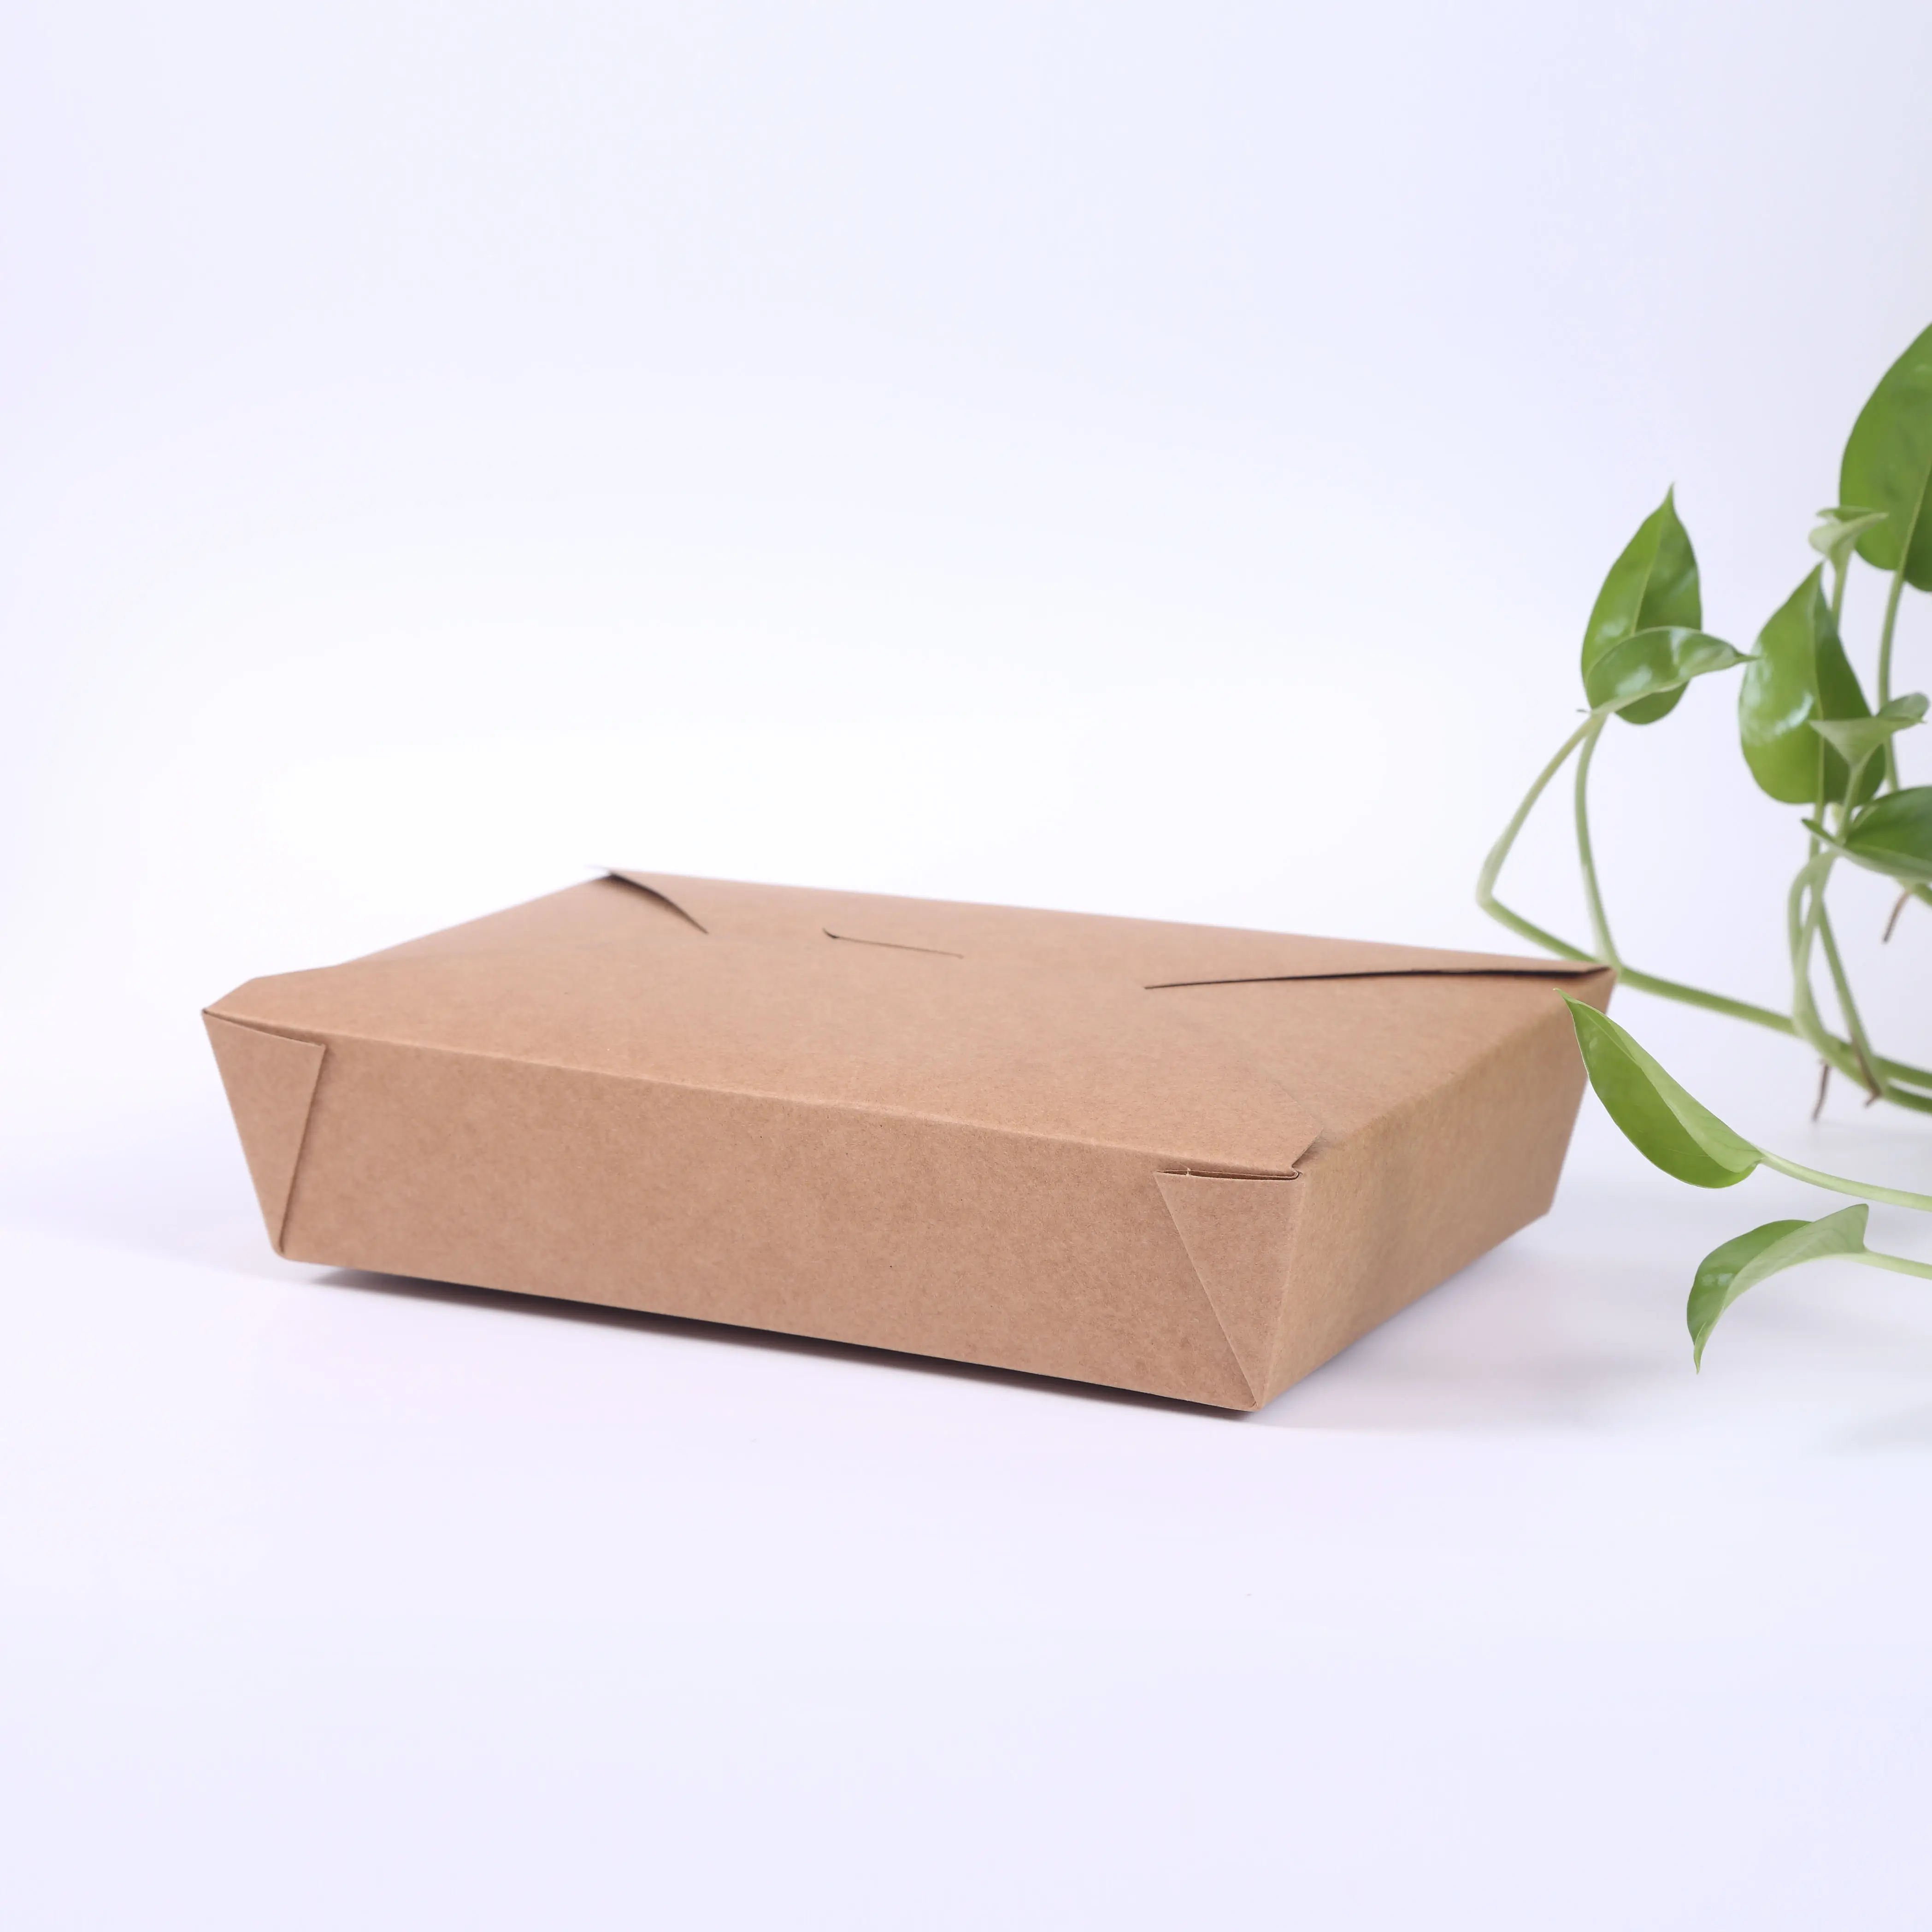 Vente chaude épicerie conteneur de papier alimentaire Jetable récipient salade boîte de papier pour <span class=keywords><strong>hamburger</strong></span>, boîte à burger en carton